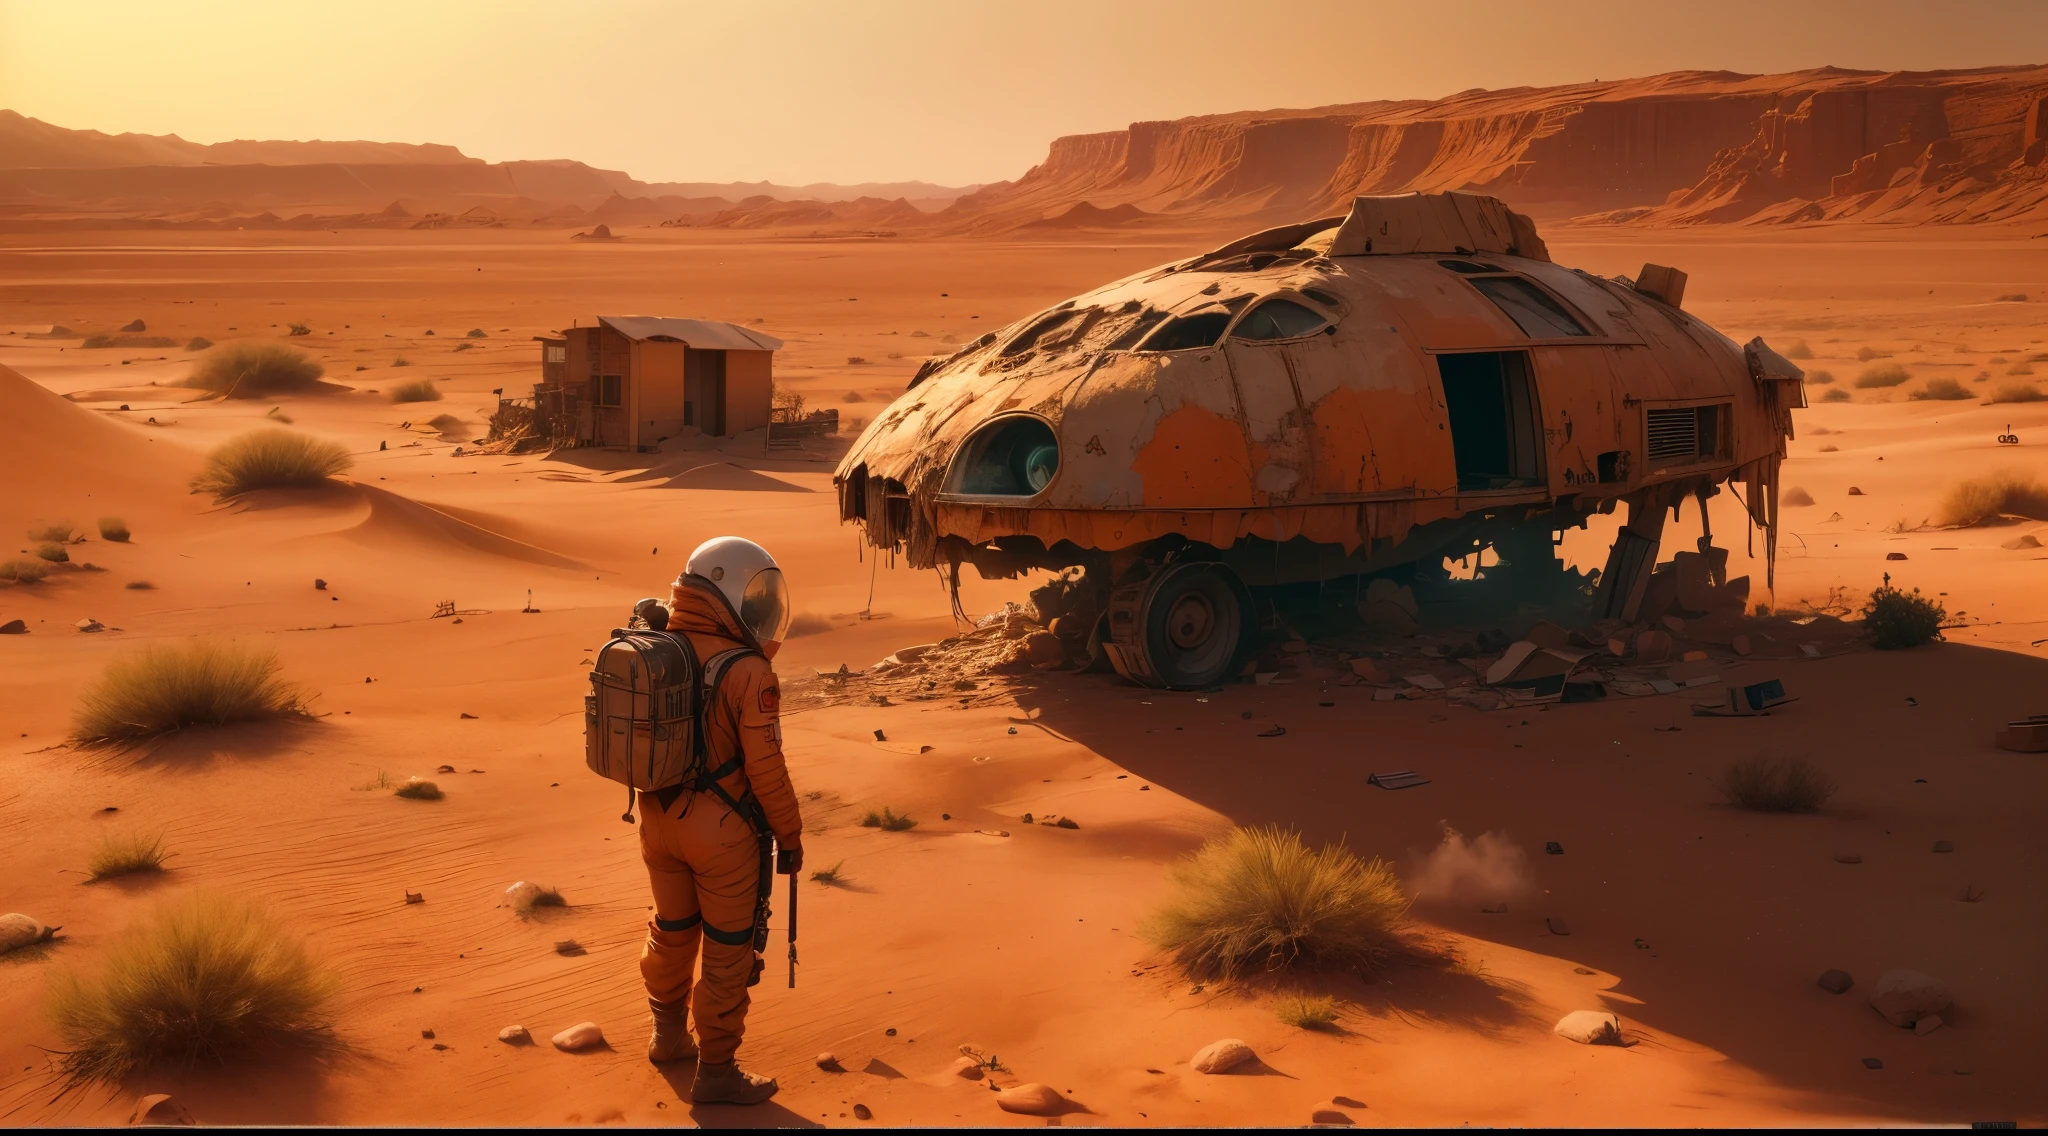 (最高品質,4K,8k,高解像度,傑作:1.2),超詳細,(現実的,photo現実的,photo-現実的:1.37),生存者2名 (男性と女性),砂漠, 映画のような環境,大破した車の隣に立っている,遠くに巨大な大破した飛行機を眺めている,赤い火星の土, 乾燥したほこりっぽい雰囲気,容赦のない火星の風景,地平線に沈む太陽, 長い影を落とす,広大な不毛の土地,荒涼とした荒涼とした環境,衰退と放棄の兆候,孤独と孤独の重い空気,人類文明の残骸,生い茂った植物が土地を埋め立てている,遠くで長い間放棄された建物が崩れ落ちている,空気中に浮遊する塵の粒子,回収材で作った仮設シェルター,灼熱の太陽が彼らを照りつける,彼らの顔には決意と疲れた表情が混じっていた,着古した服,周囲に散らばった道具や物資,過酷な環境から身を守るサバイバルスーツ,未来的な火星の都市の遠景, 空っぽで沈黙,深い孤独感と憧れ,カラーパレットを支配する赤オレンジの色合い,ドラマチックな照明, 深い影を落とす,ailing sounds of wind blowing through the 砂漠,静寂の響きが現場を包み込む,火星の計り知れない広大さ, 物事の壮大な計画の中では自分が小さくて取るに足らないと感じる.